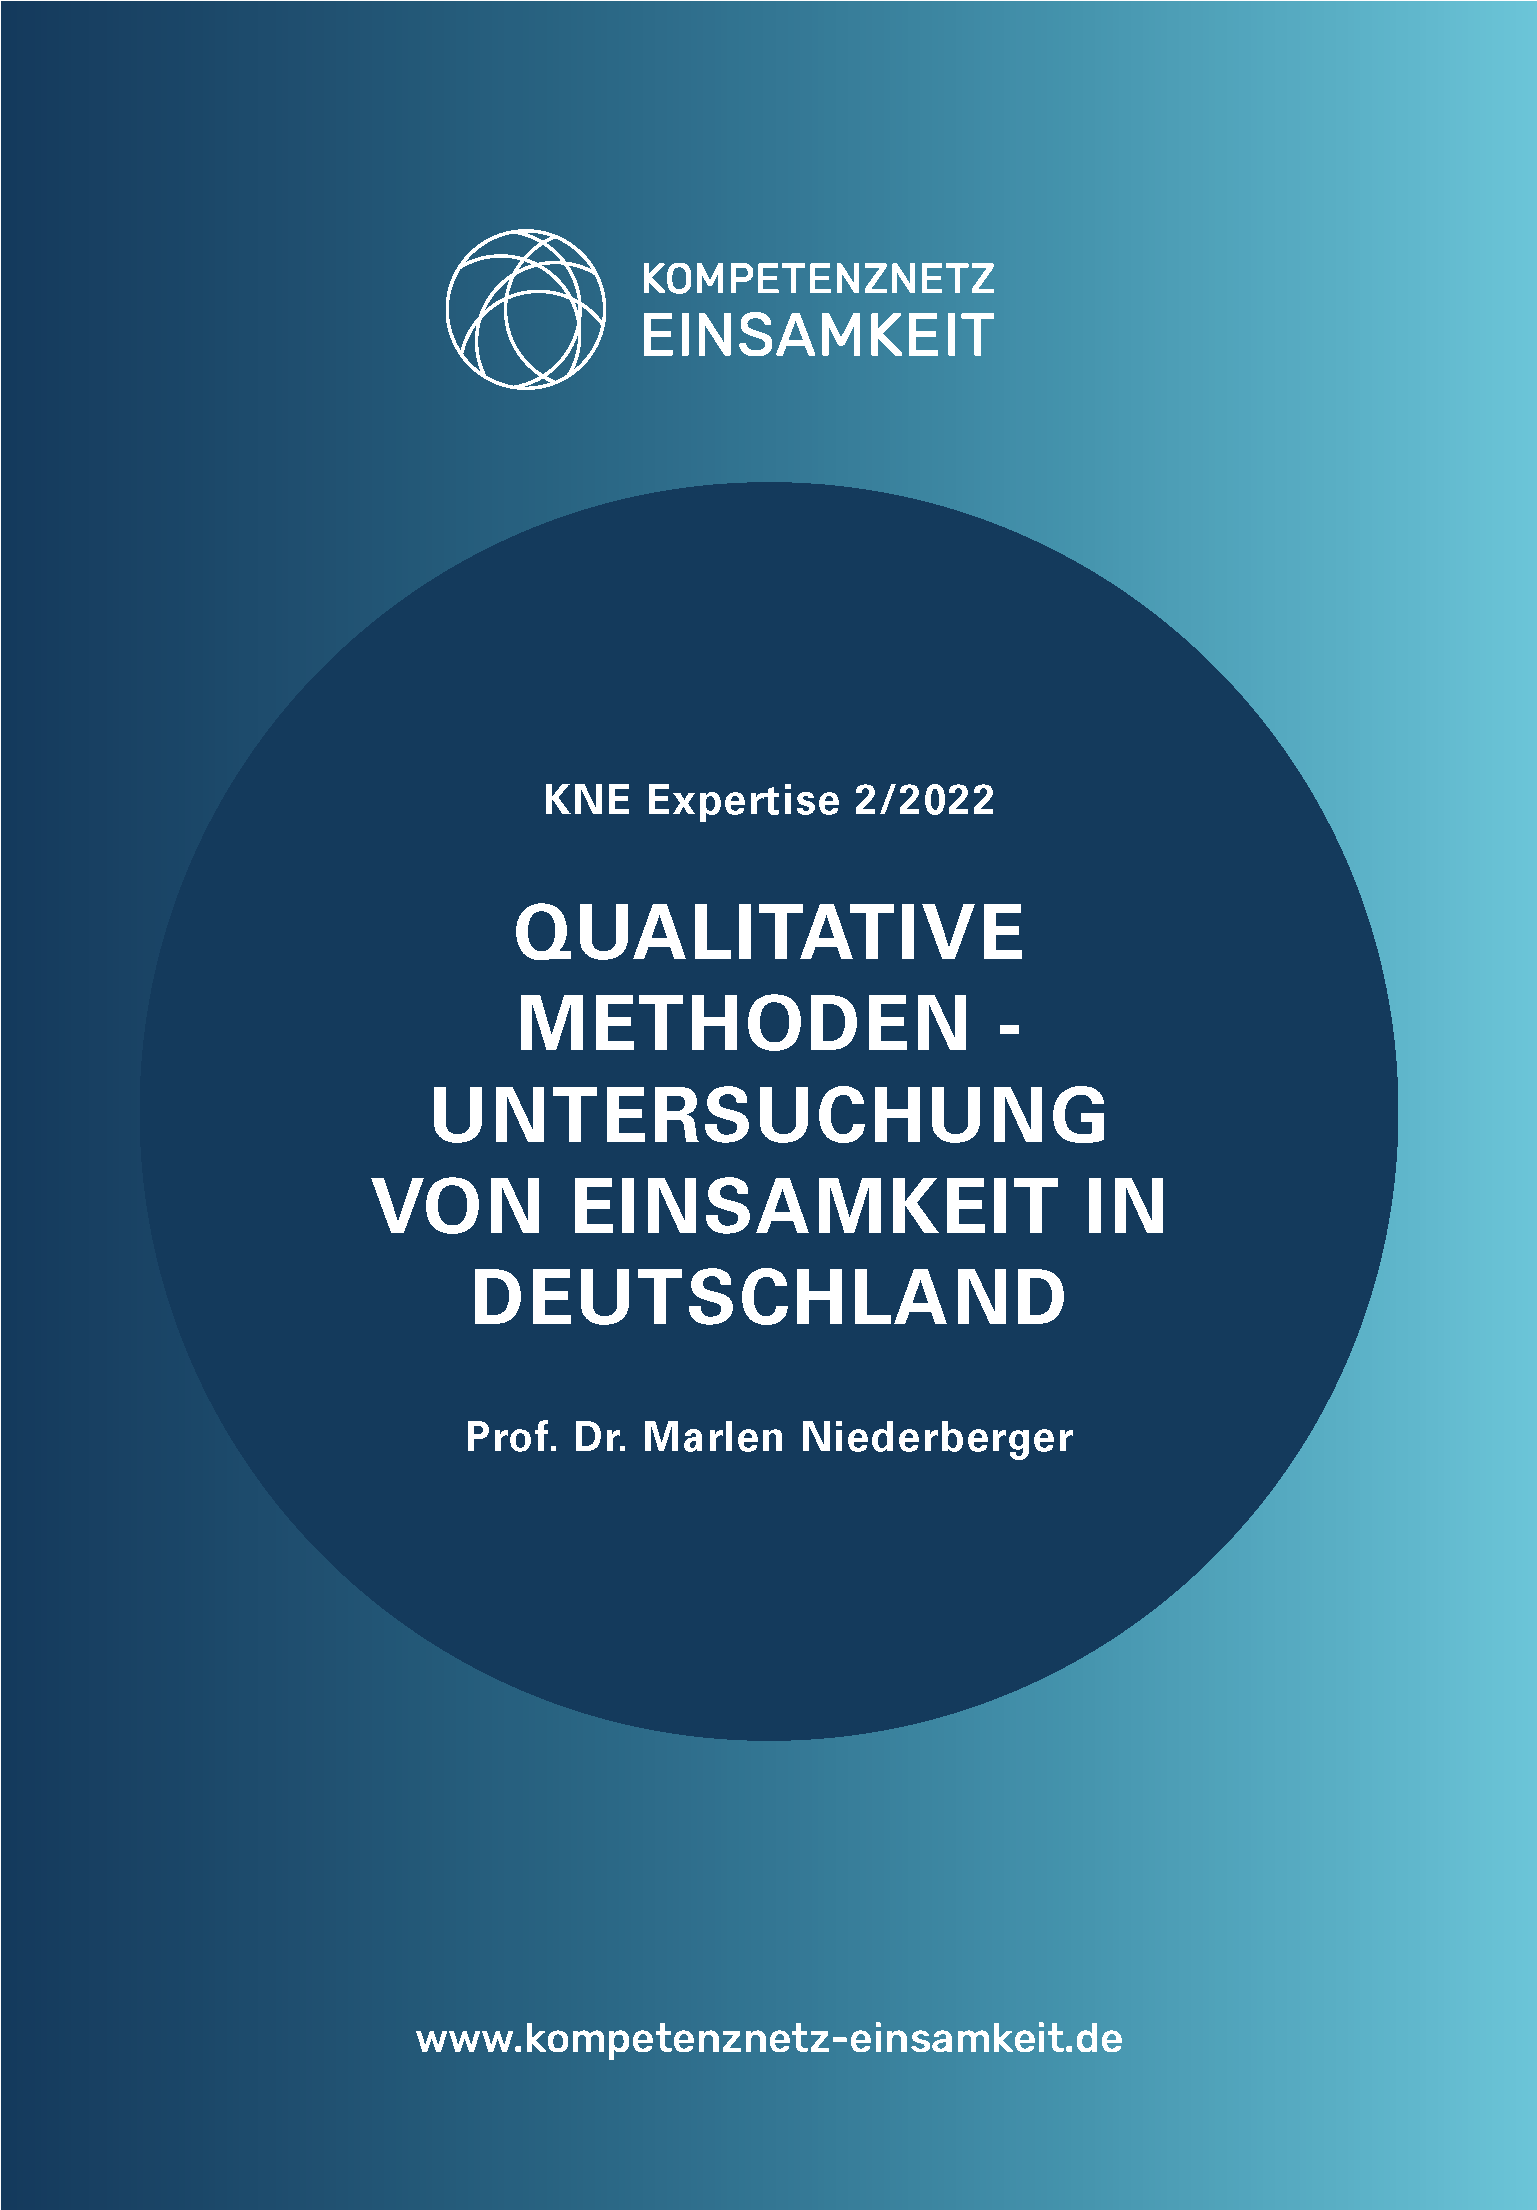 Qualitative Methoden - Untersuchung von Einsamkeit in Deutschland, Prof. Dr. Marlen Niederberger